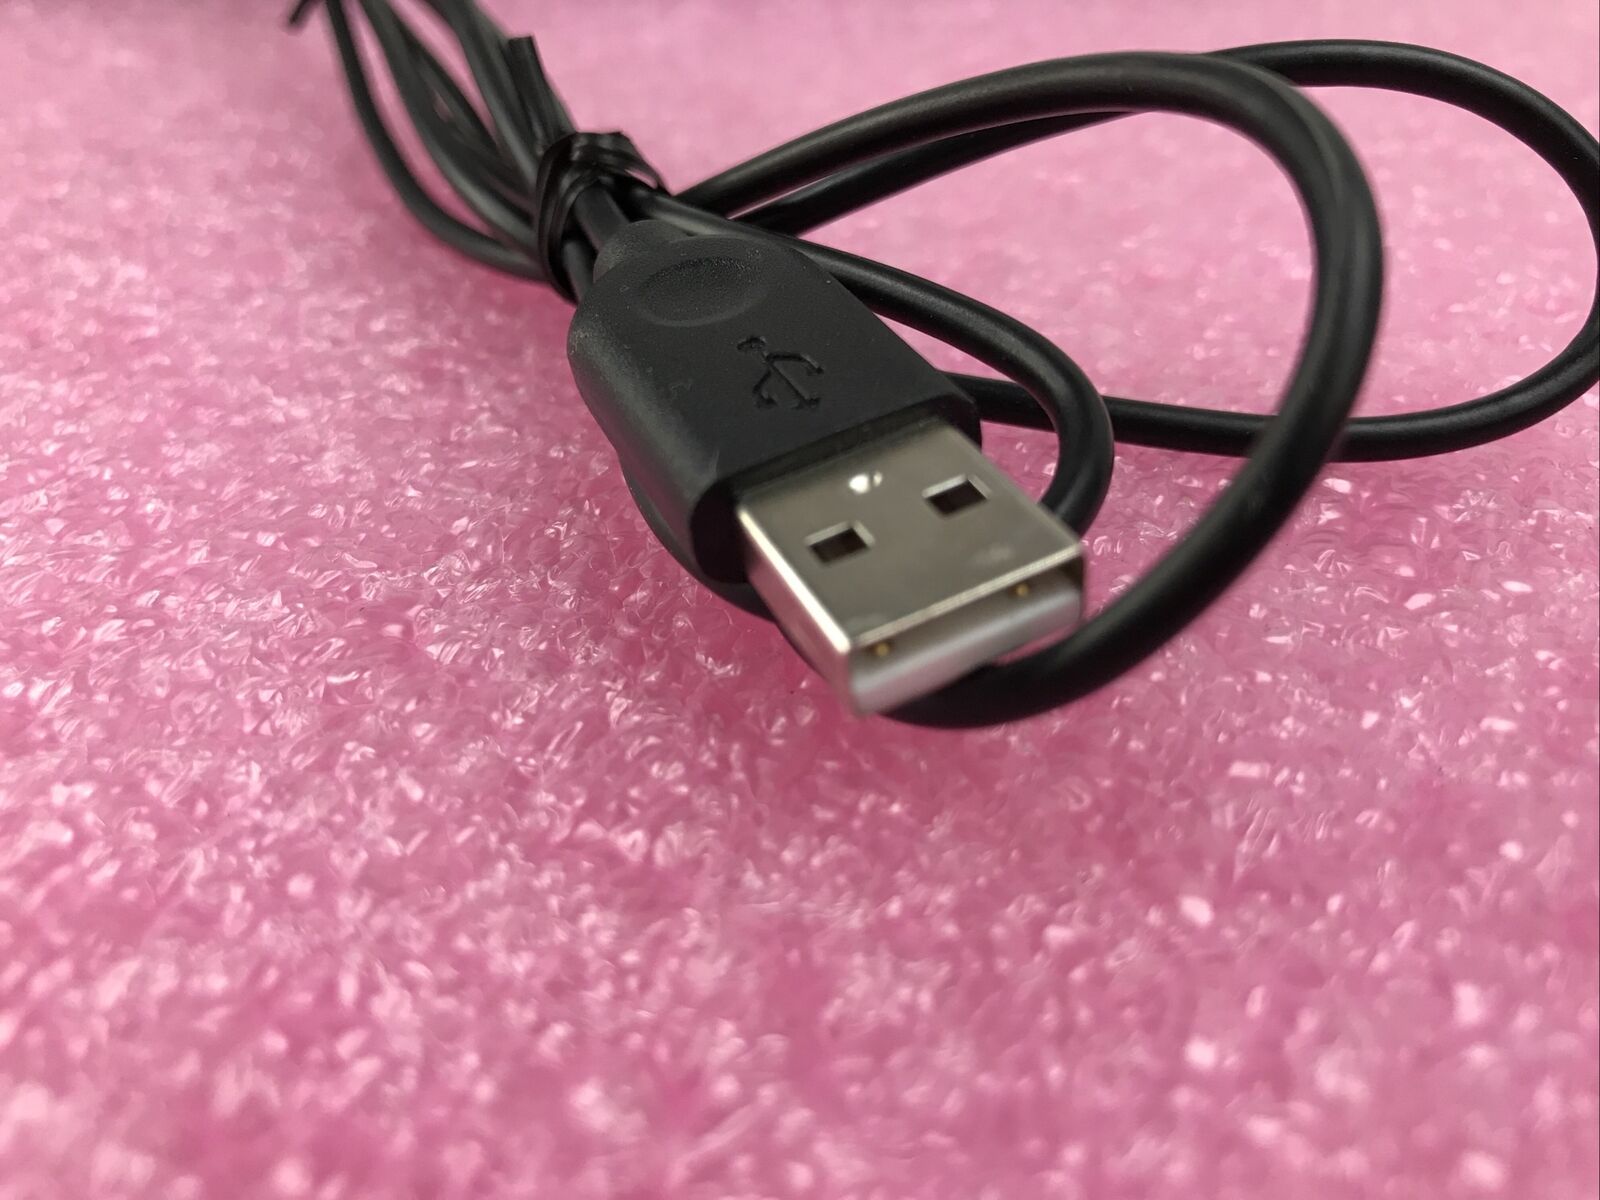 Logitech Y-U0009 USB Keyboard - Untested